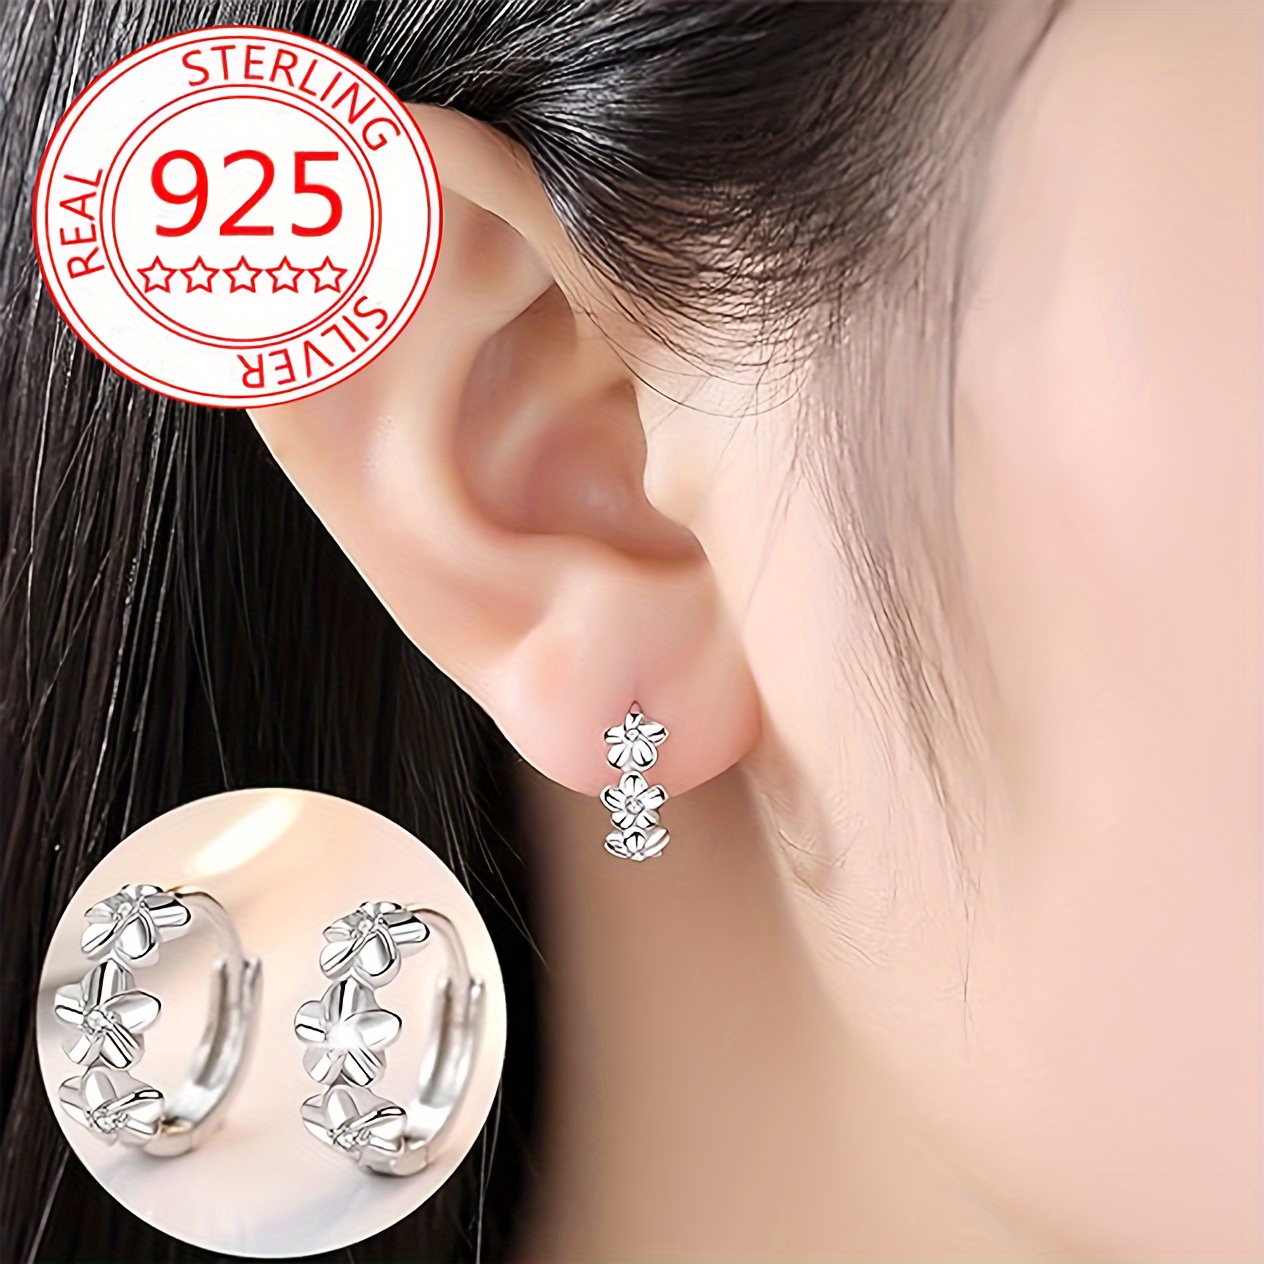 

S925 Sterling Silver Hoop Earrings, Sweet Flower Decor Hoop Earrings Elegant Minimalist Style Dating Jewelry Gifts For Women 3g/0.11oz